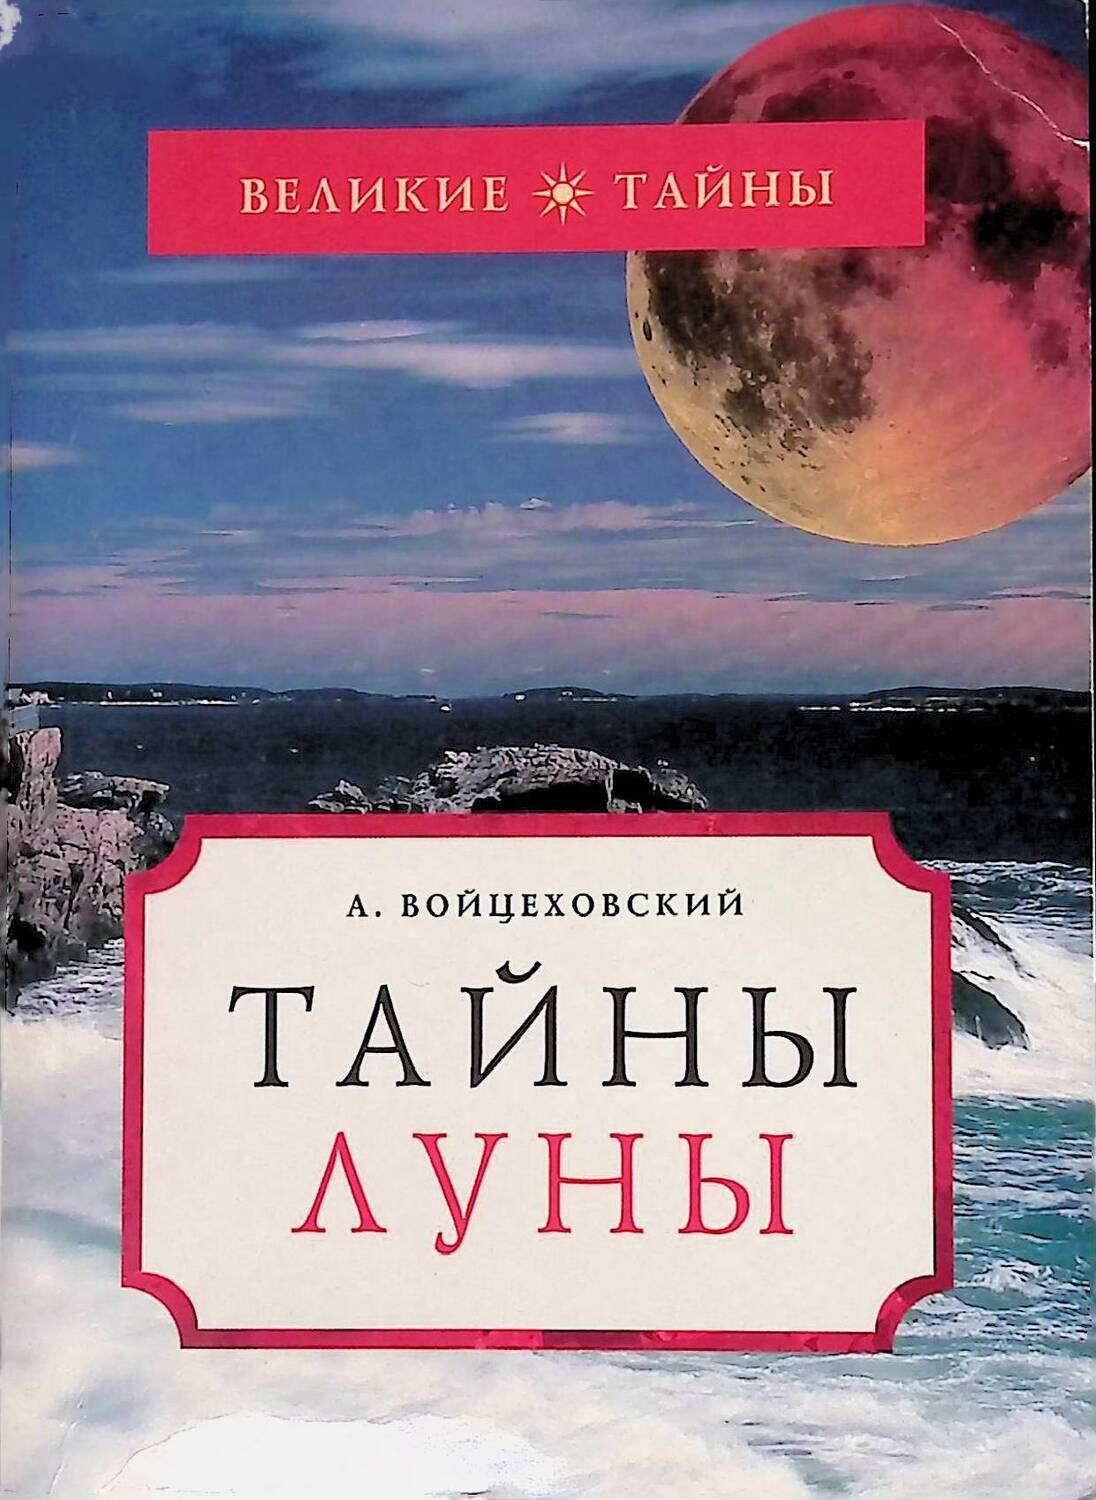 Луна тайное. Тайны Луны. Книги Войцеховский. Книга загадки Луны. Тайна Луны книга.